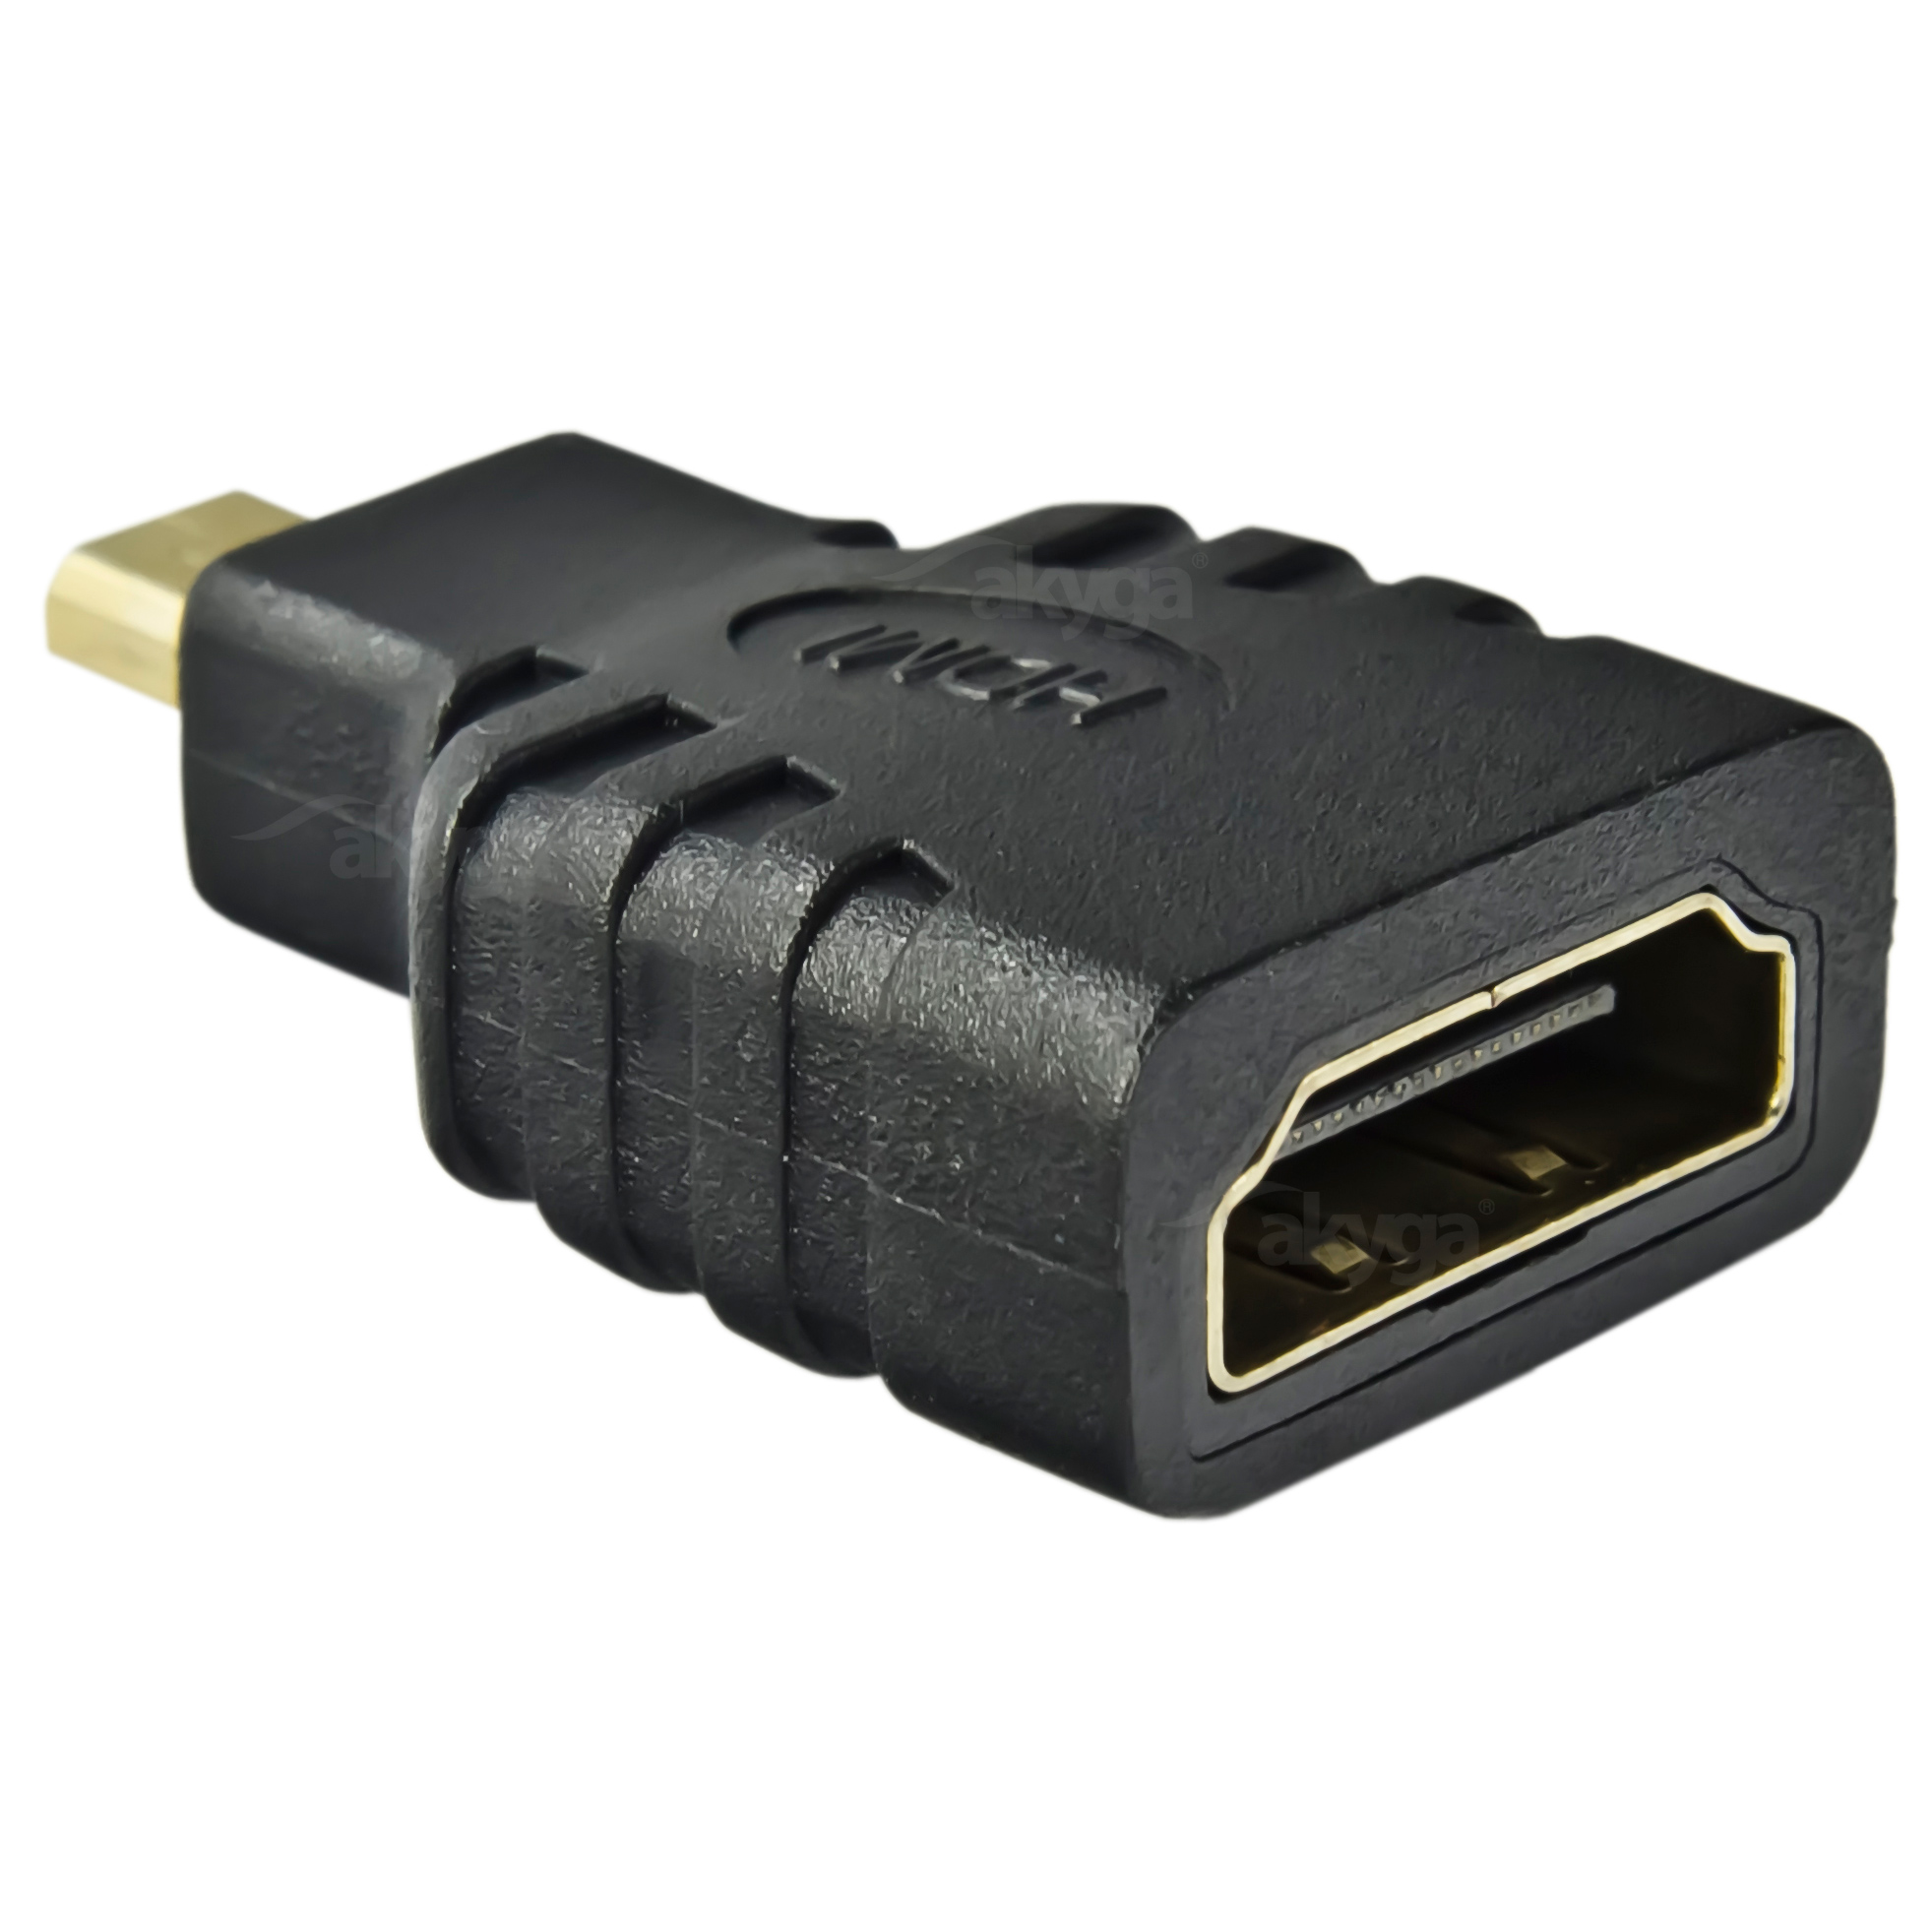 Cable HDMI 5.0m AK-HD-50A